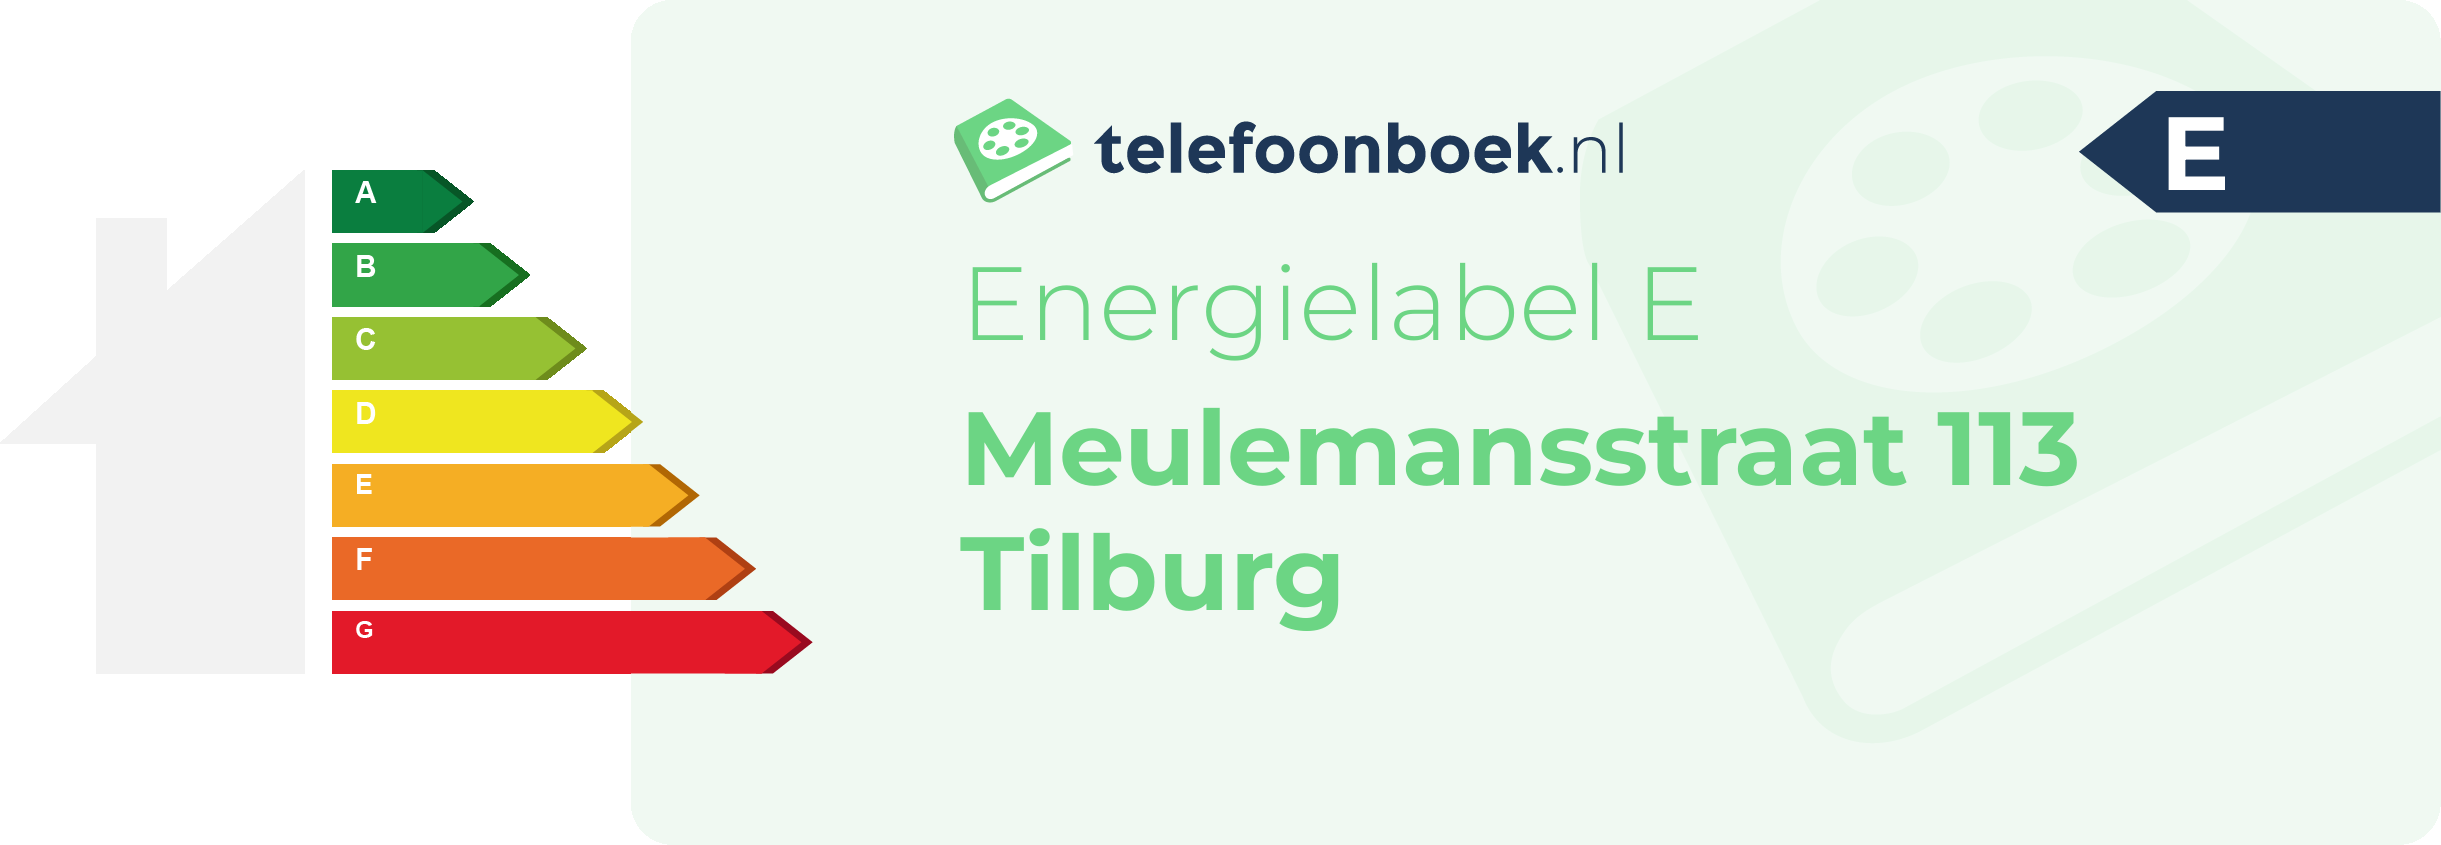 Energielabel Meulemansstraat 113 Tilburg